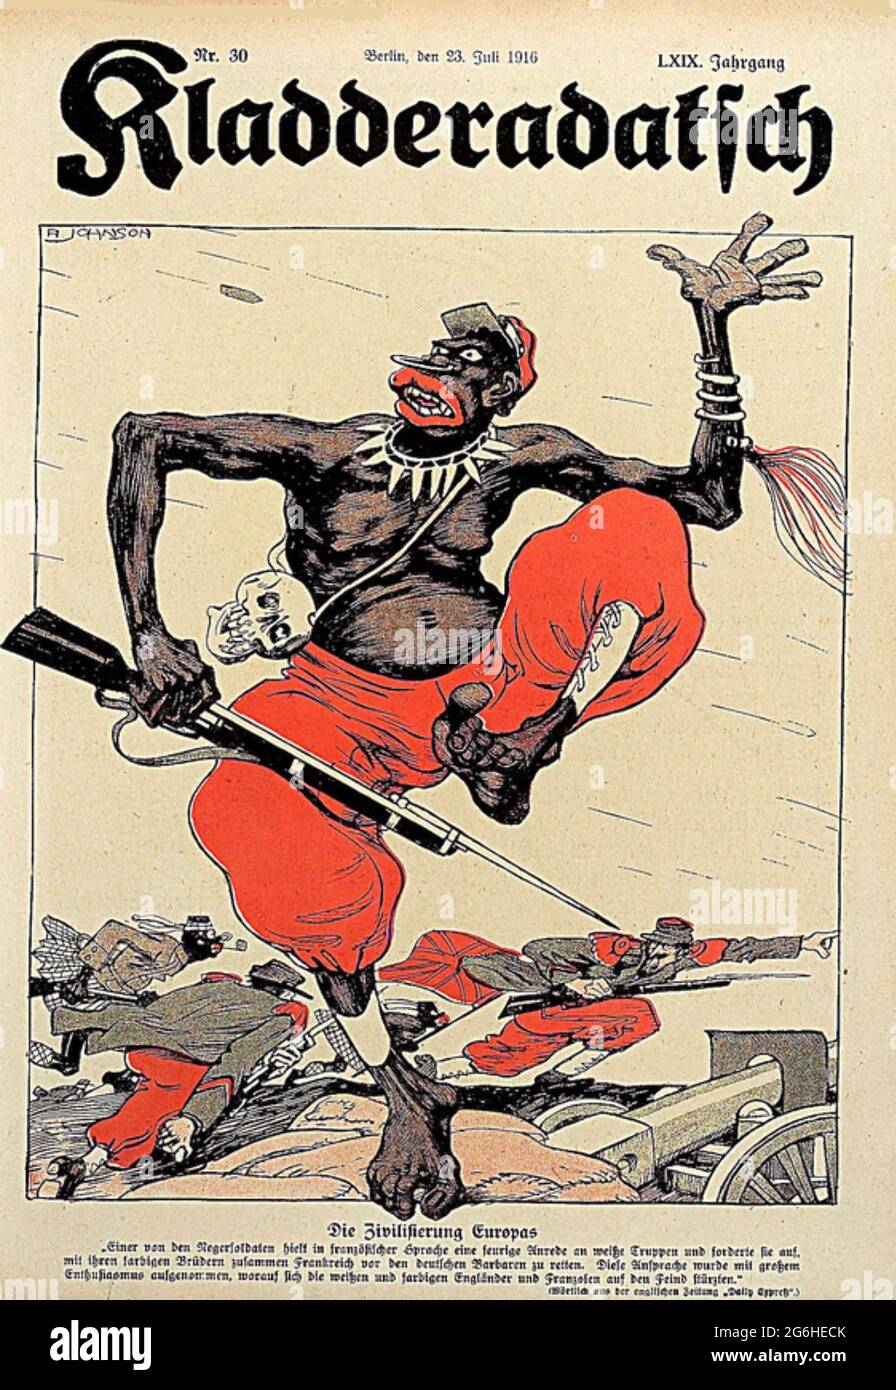 KLADERADATSCH rivista satirica tedesca dal luglio 1914 che scherzava i soldati coloniali francesi Foto Stock